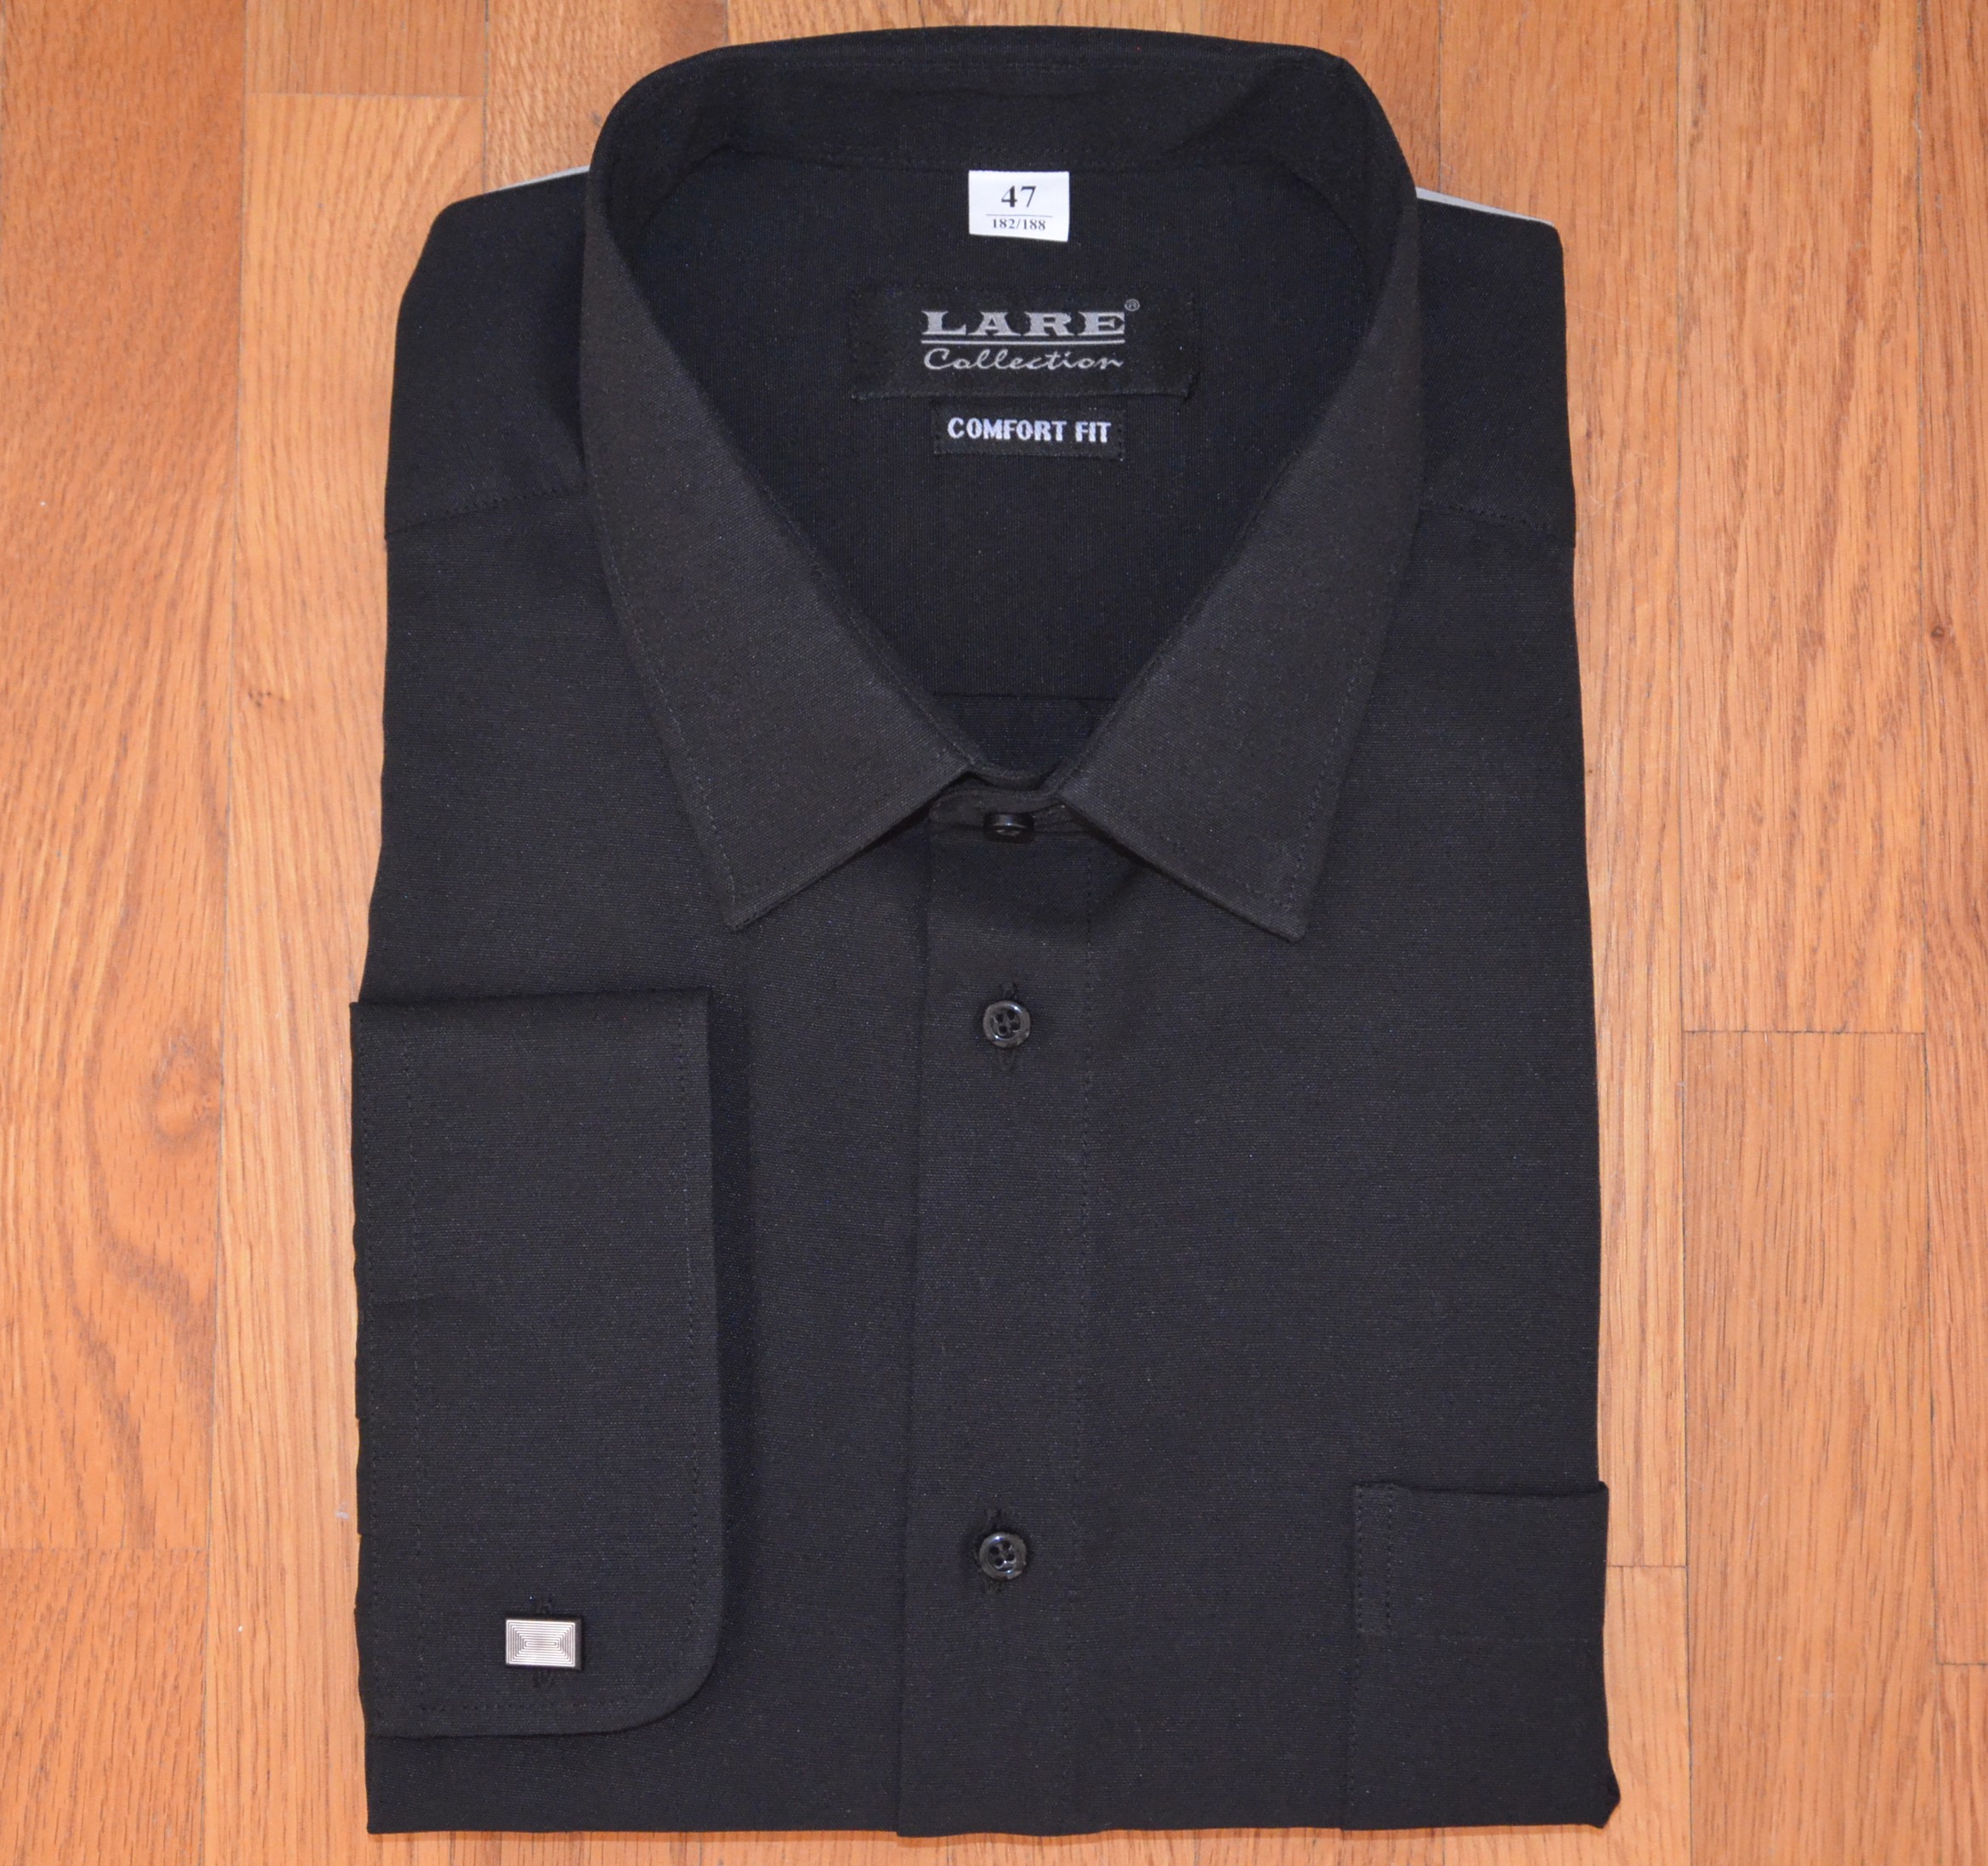 Pánská košile dlouhý rukáv LARE COMFORT FIT černá A36 na manžetový knoflík Velikost: 50